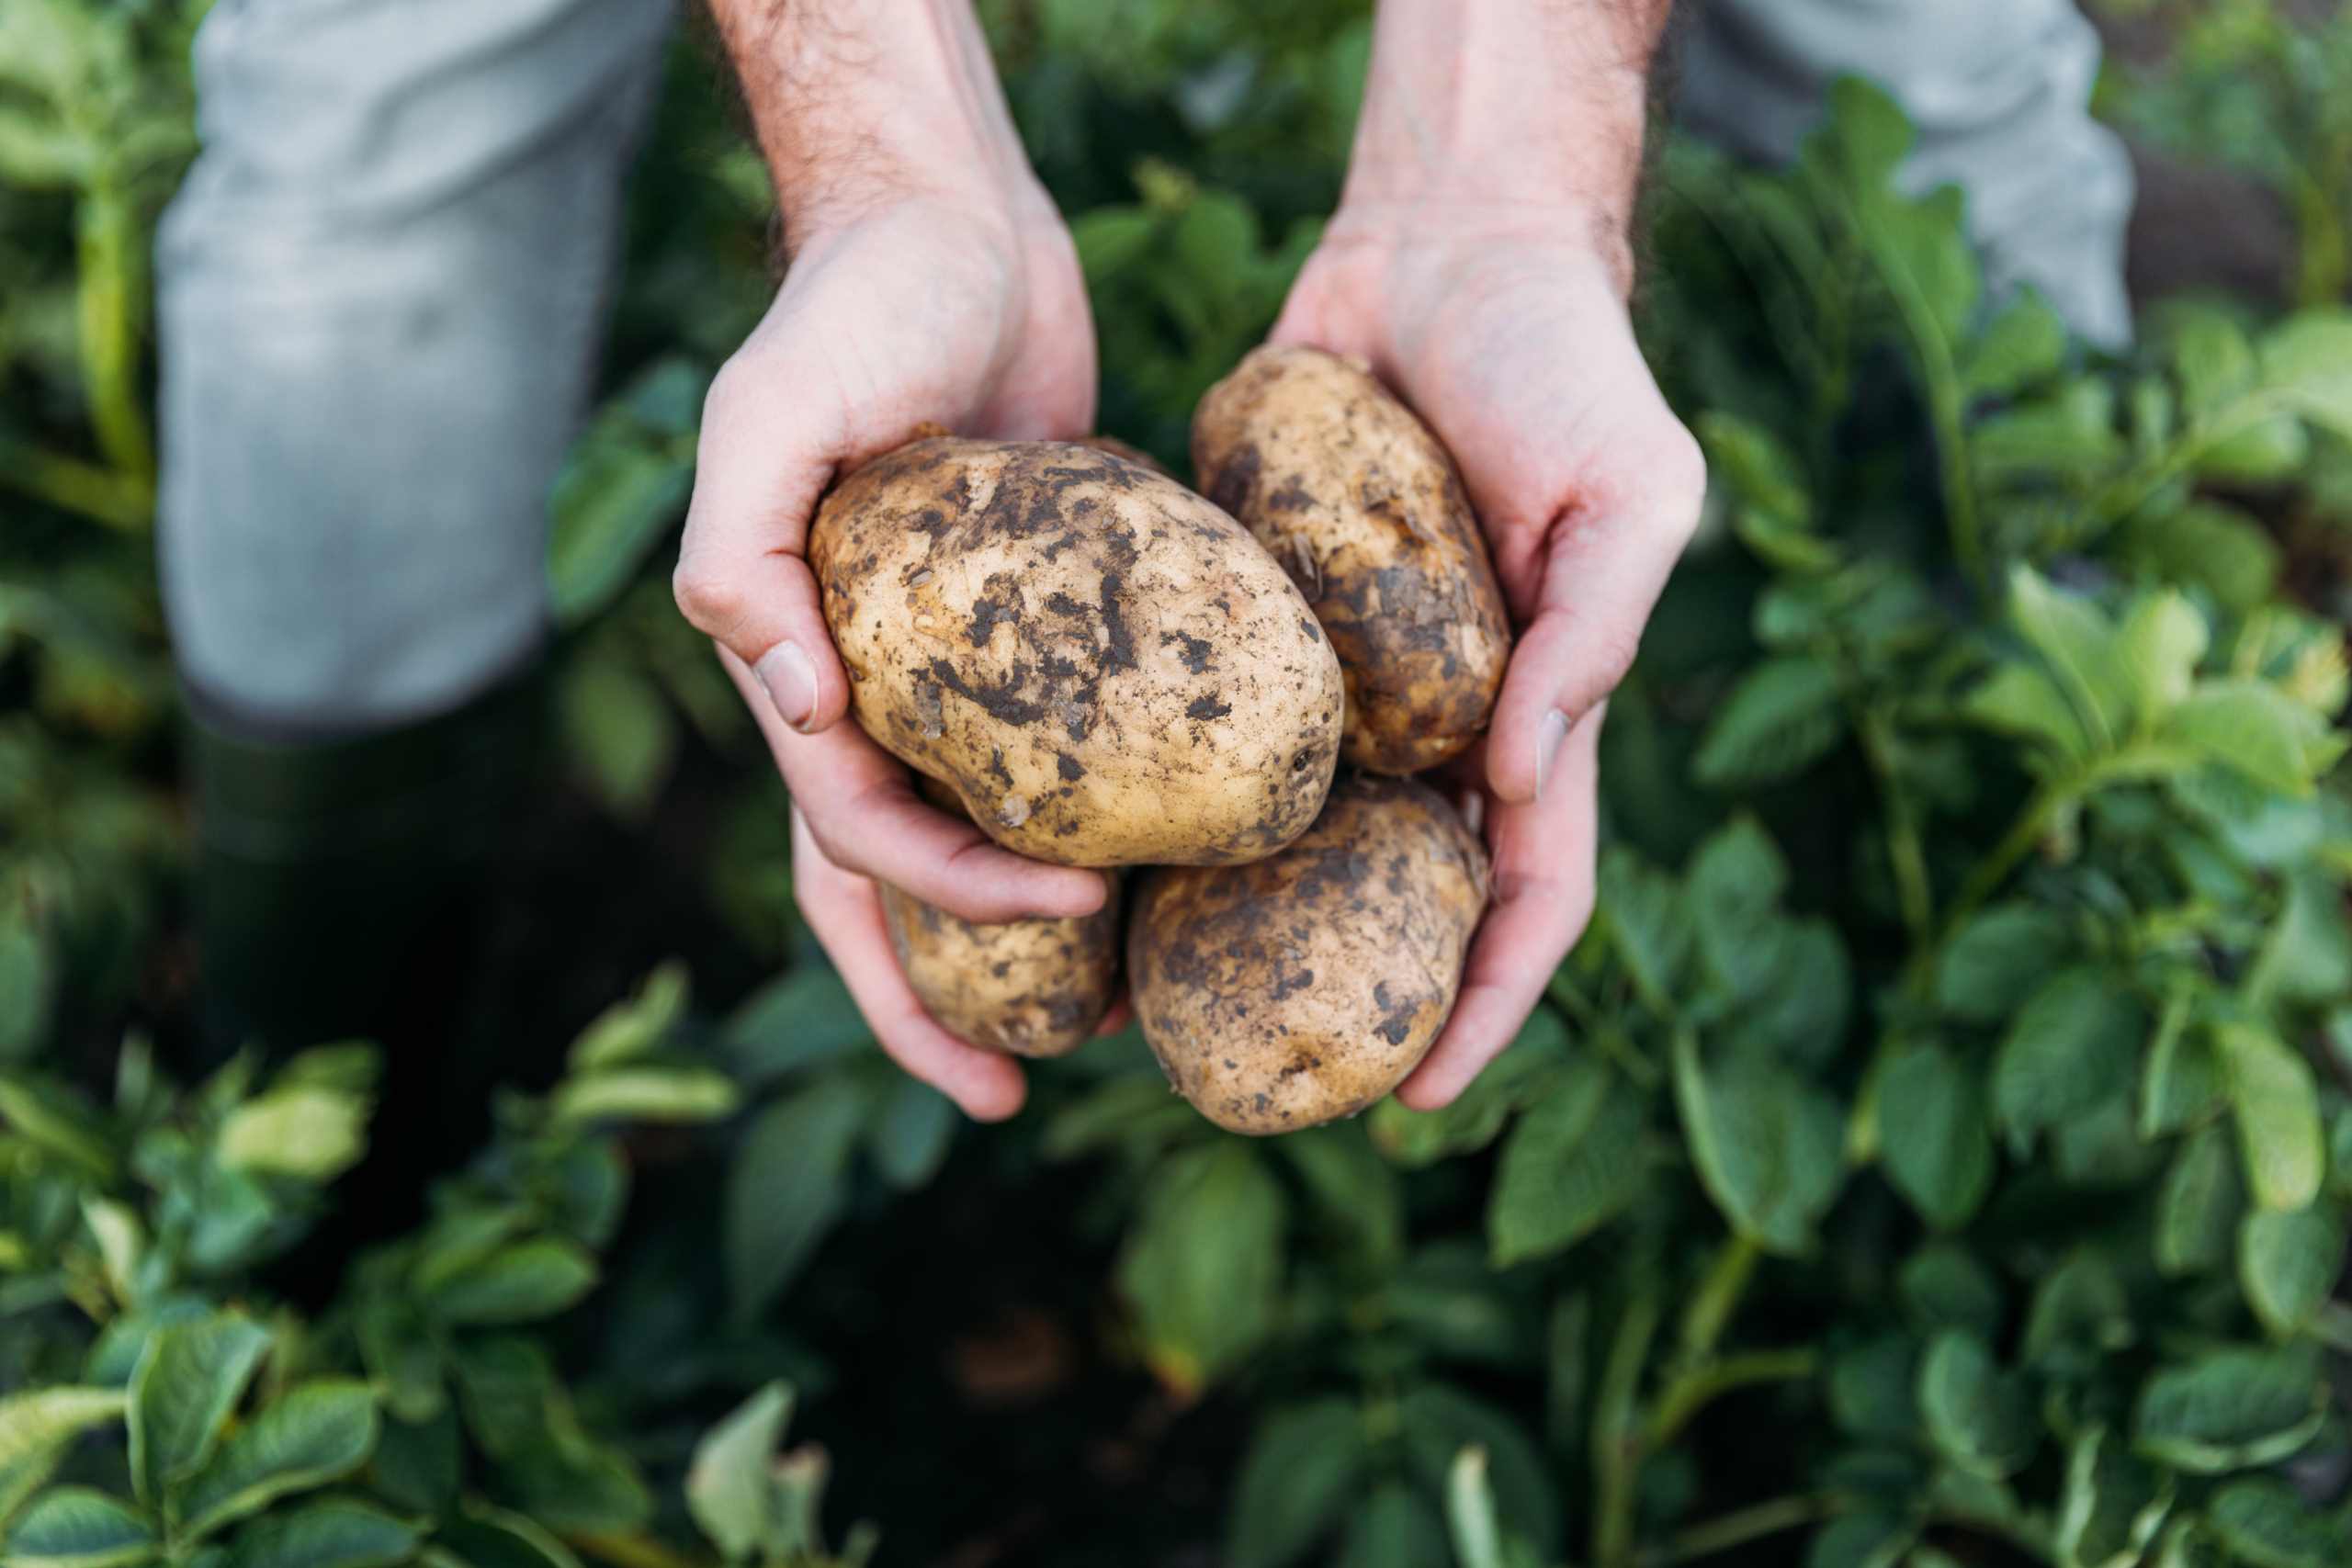 farmer holding potatoes in field